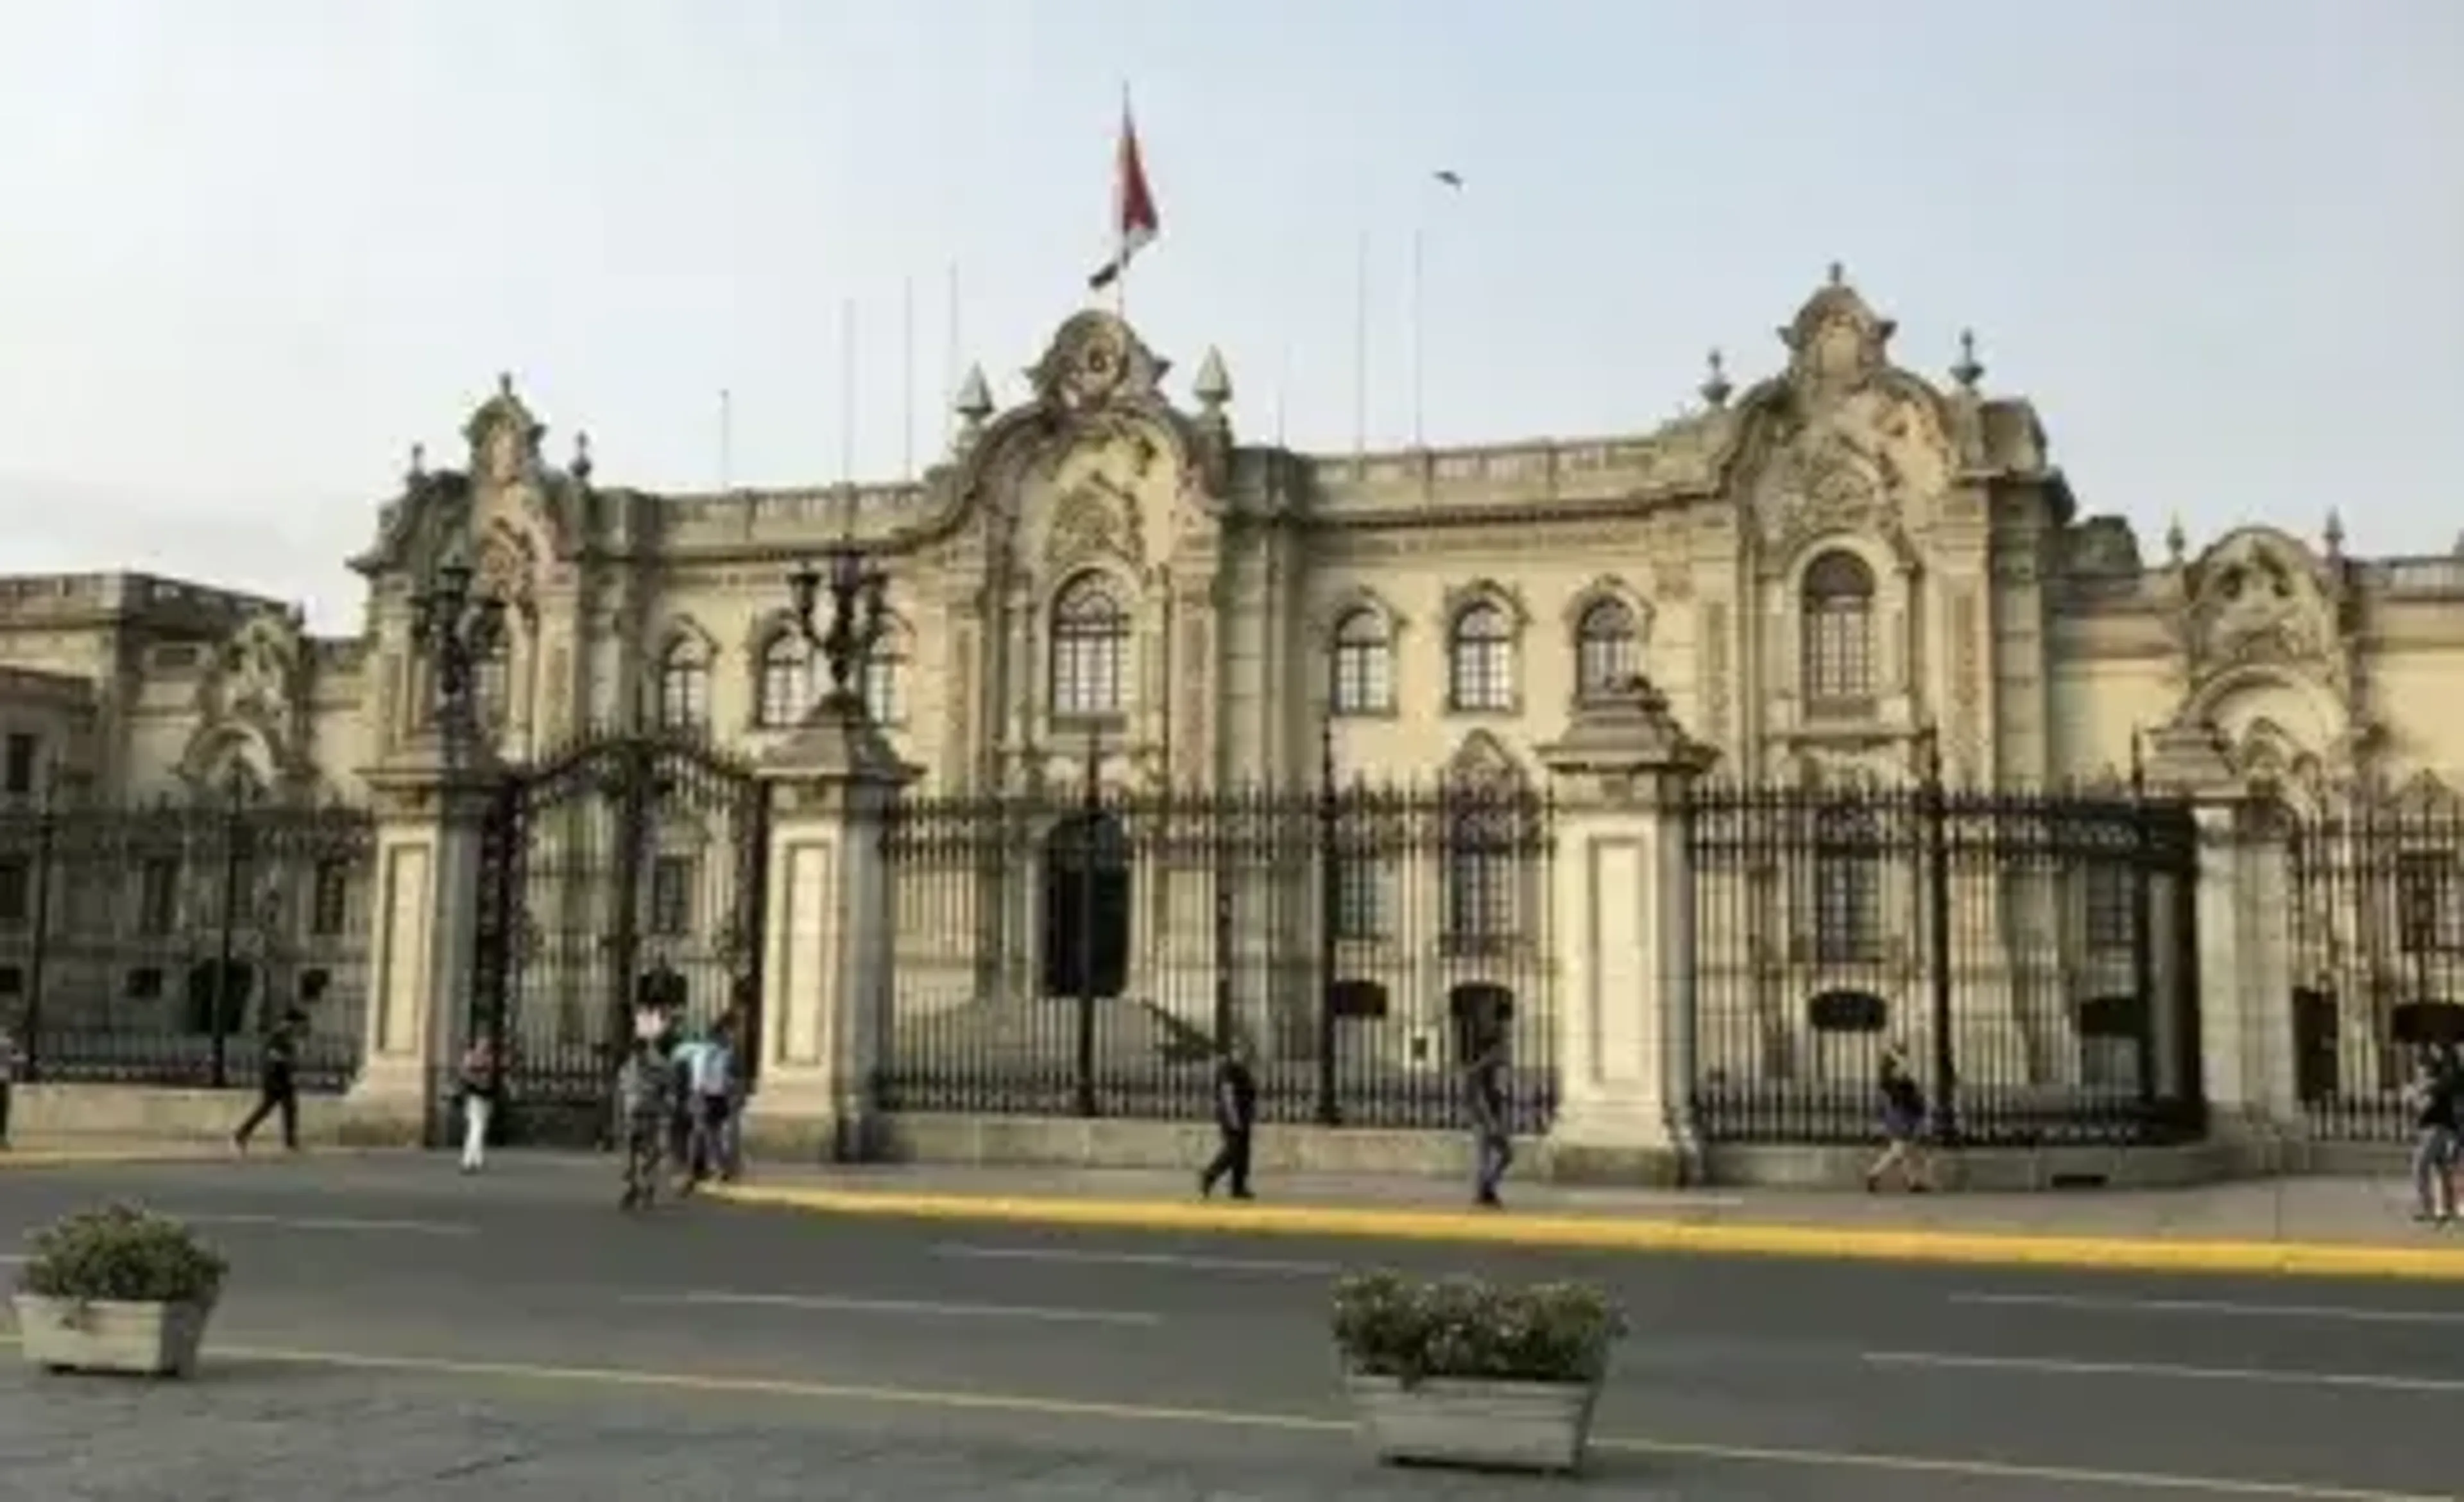 Facade of Peruvian building